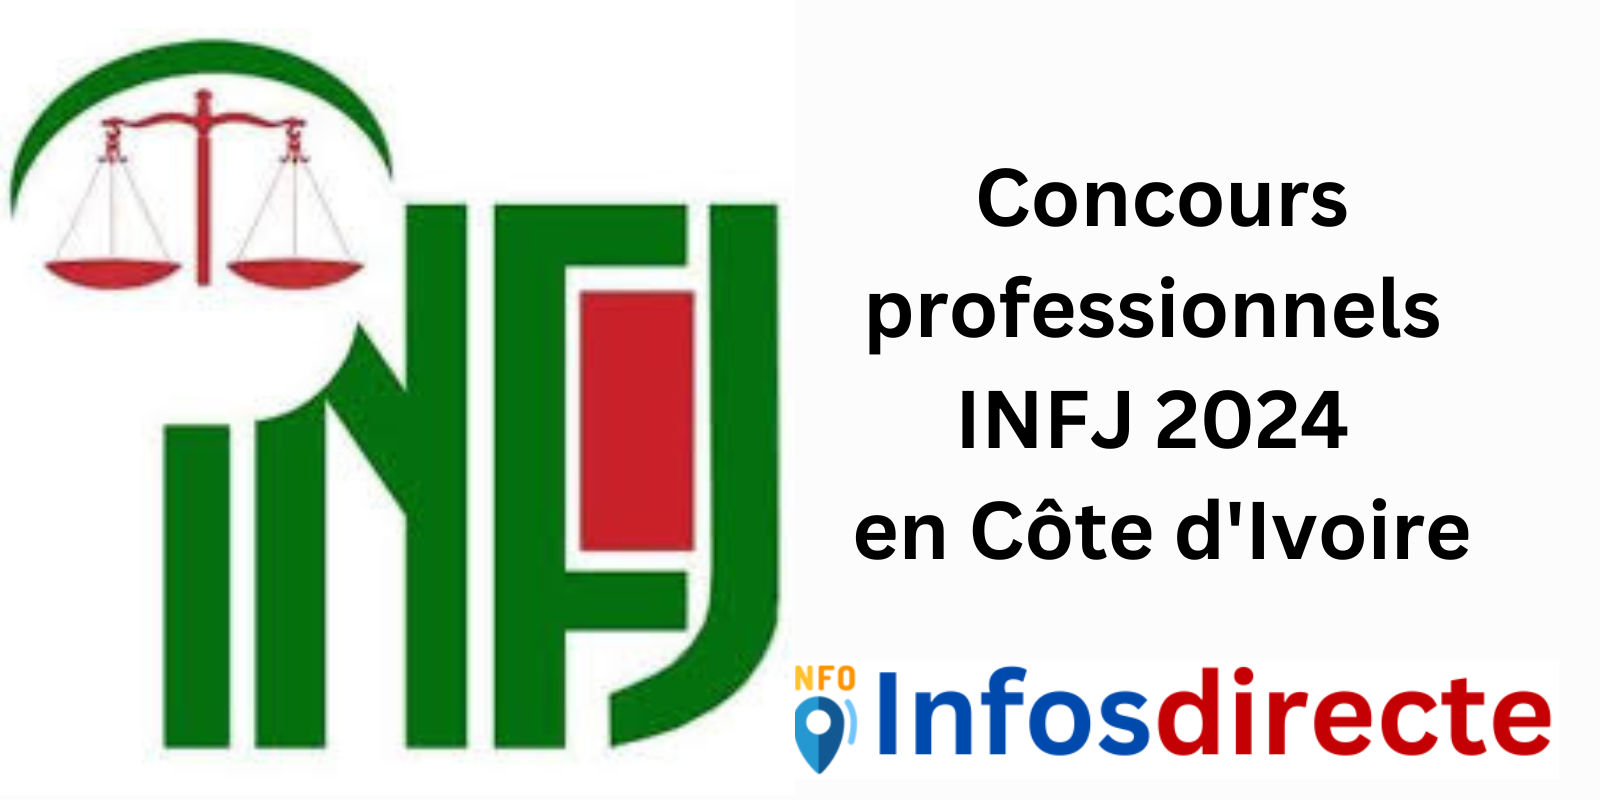 Concours professionnels INFJ 2024 en Côte d'Ivoire